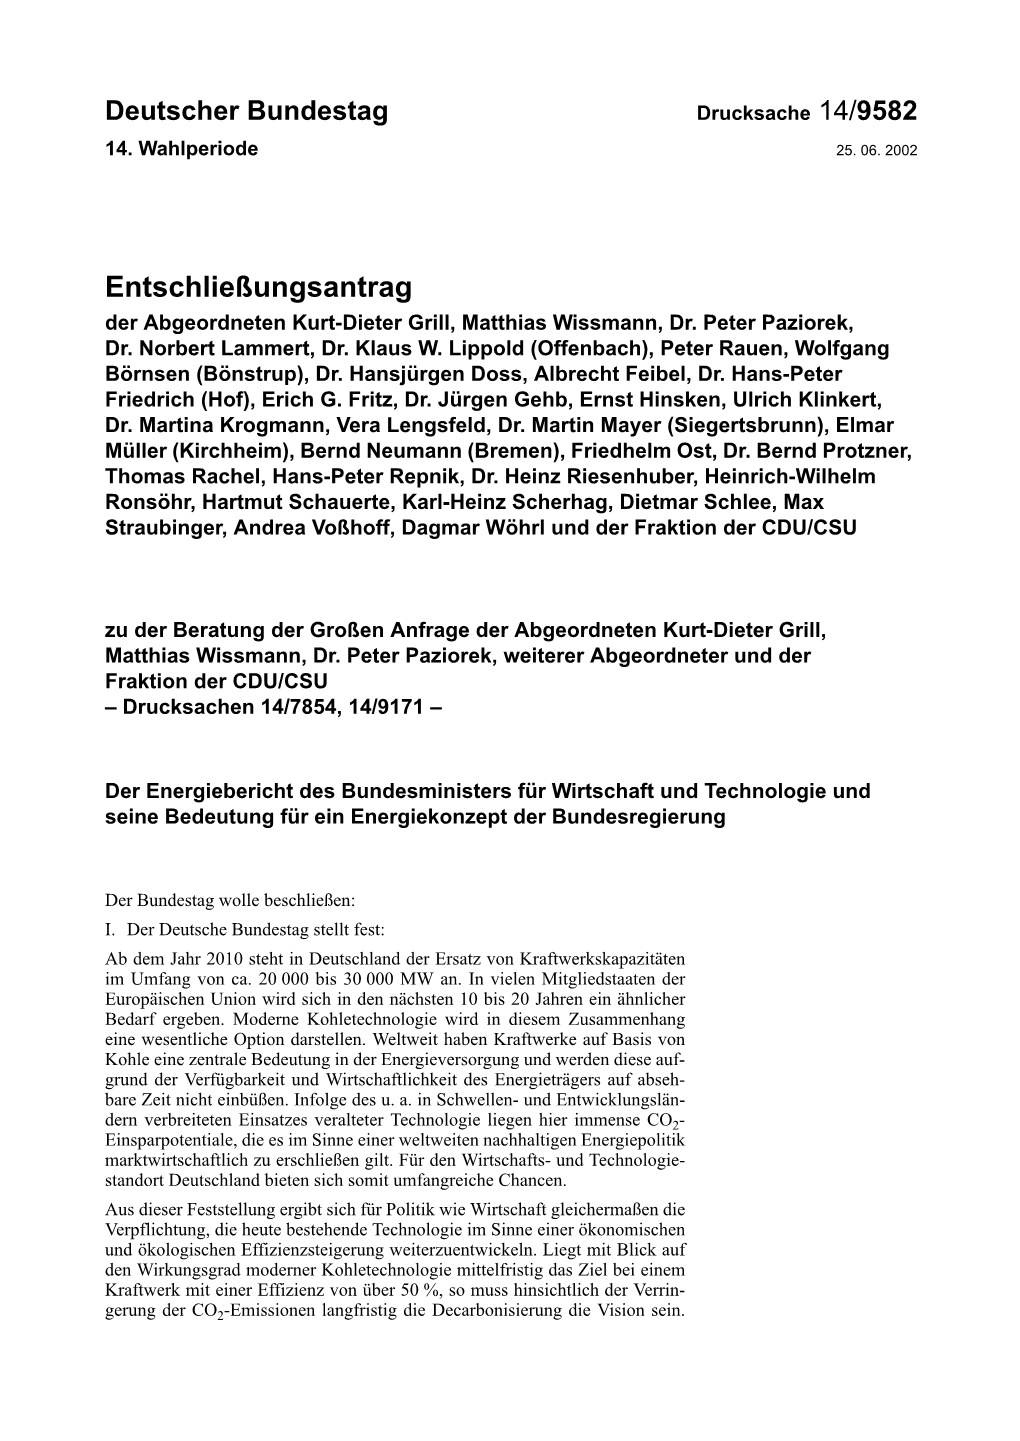 Entschließungsantrag Der Abgeordneten Kurt-Dieter Grill, Matthias Wissmann, Dr